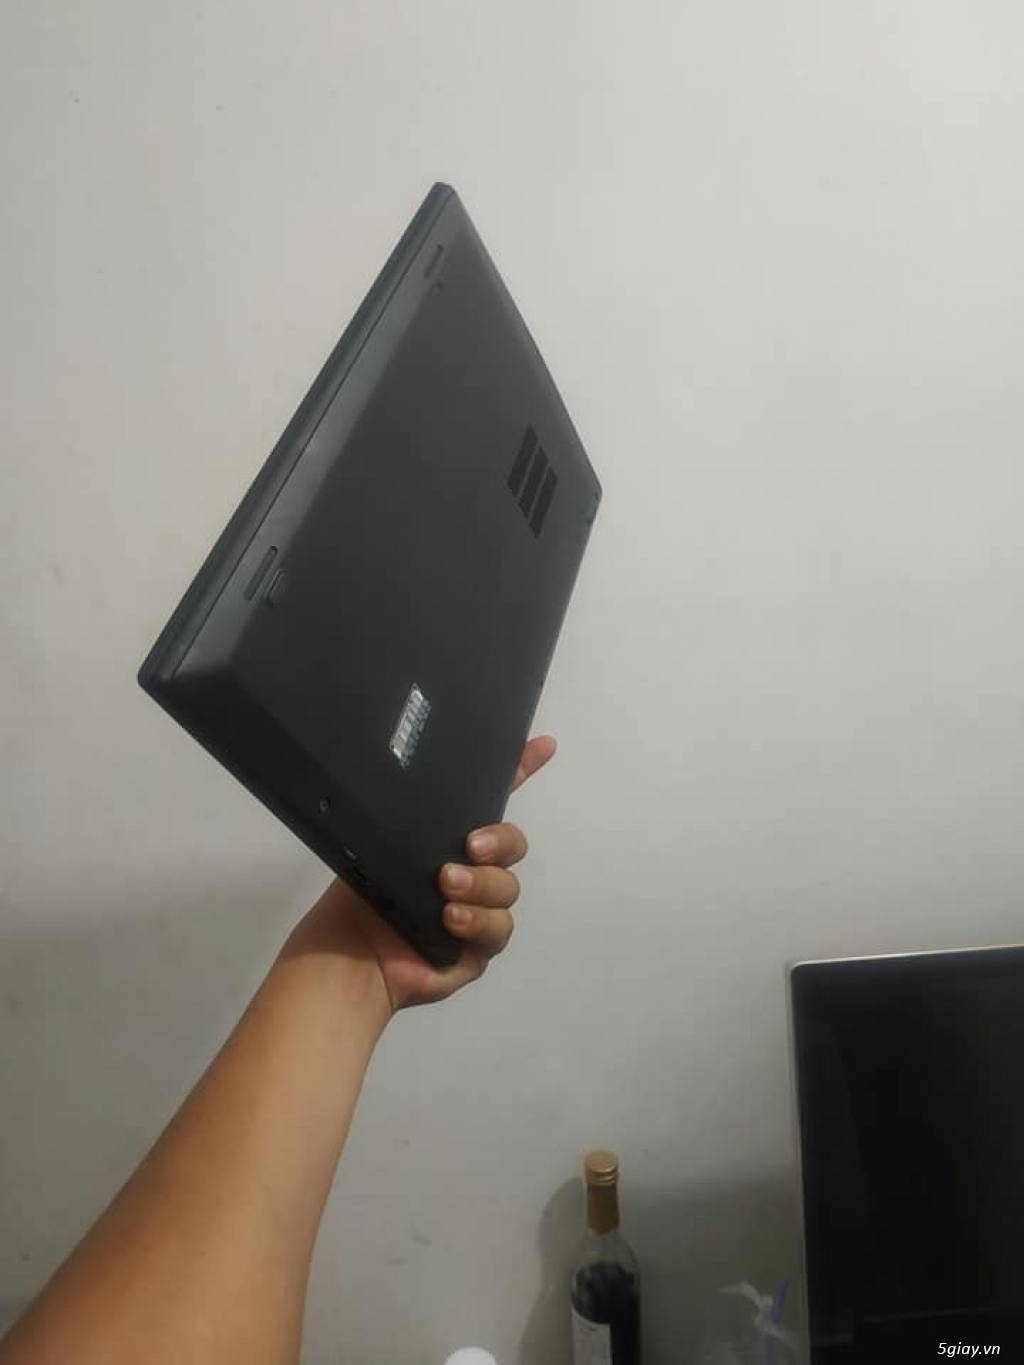 Laptop Lenovo Thinkpad X1 carbon / Cao cấp / Siêu nhẹ - 3